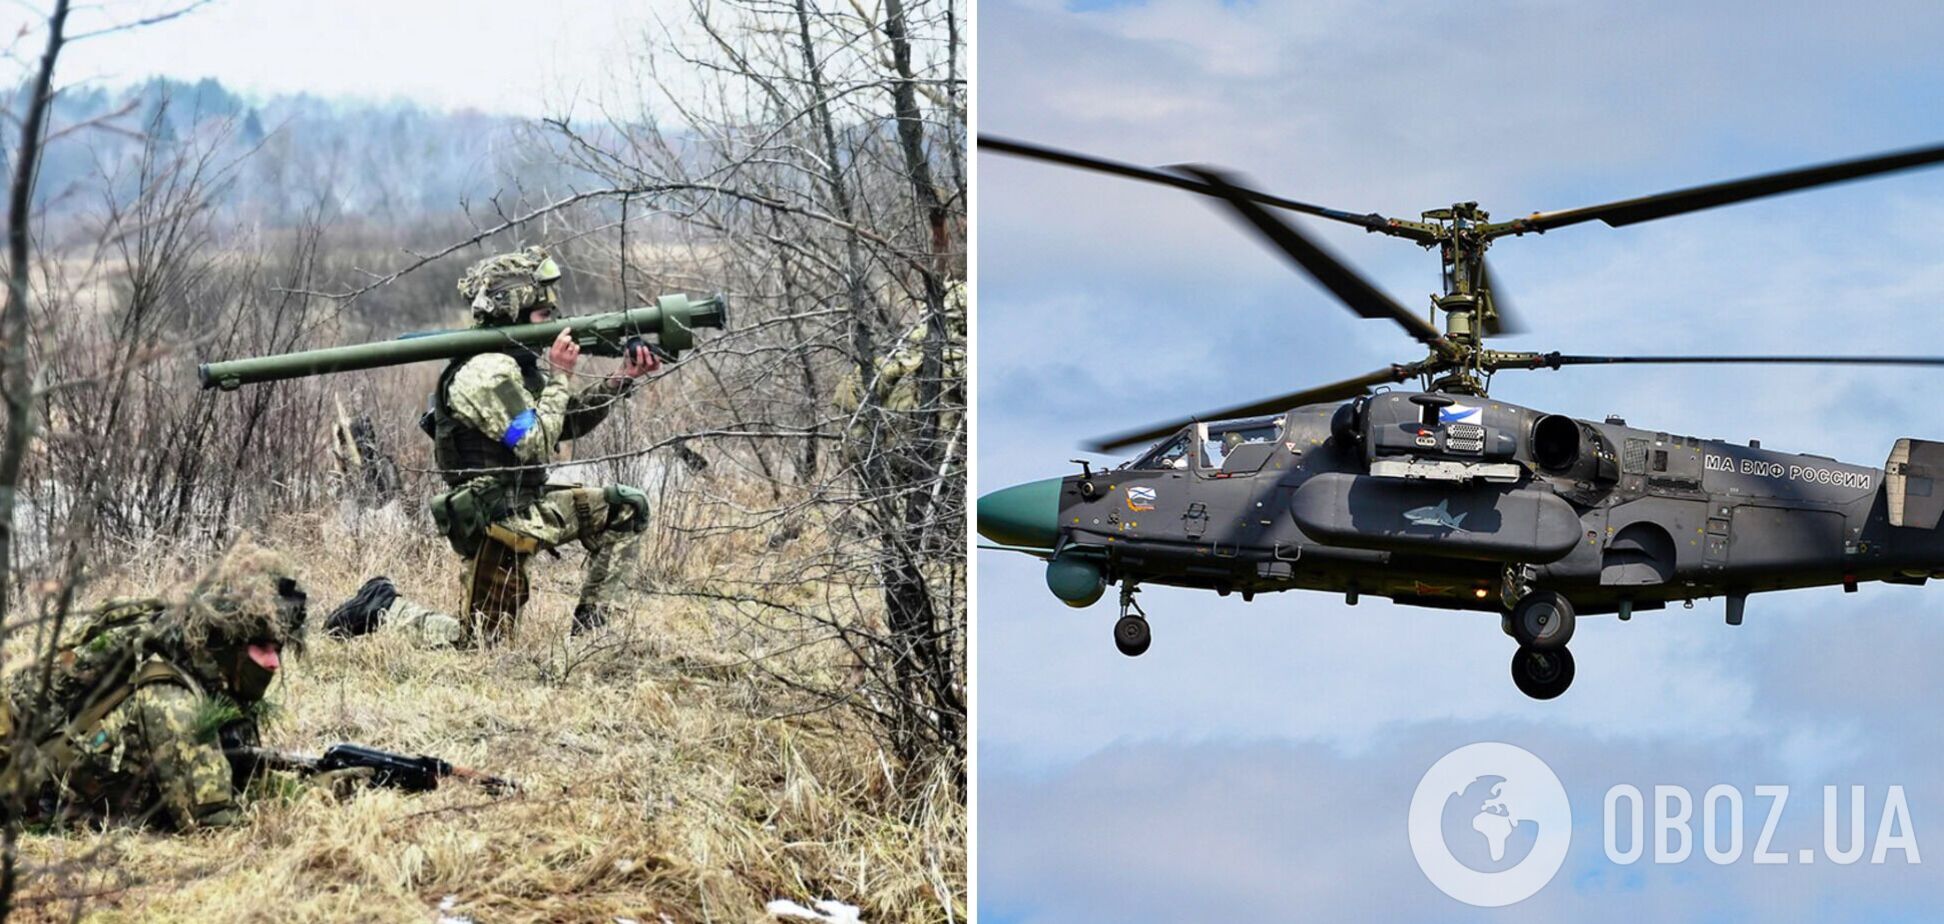 ВСУ сбили вражеский вертолет Ка-52 'Аллигатор' в районе Изюма